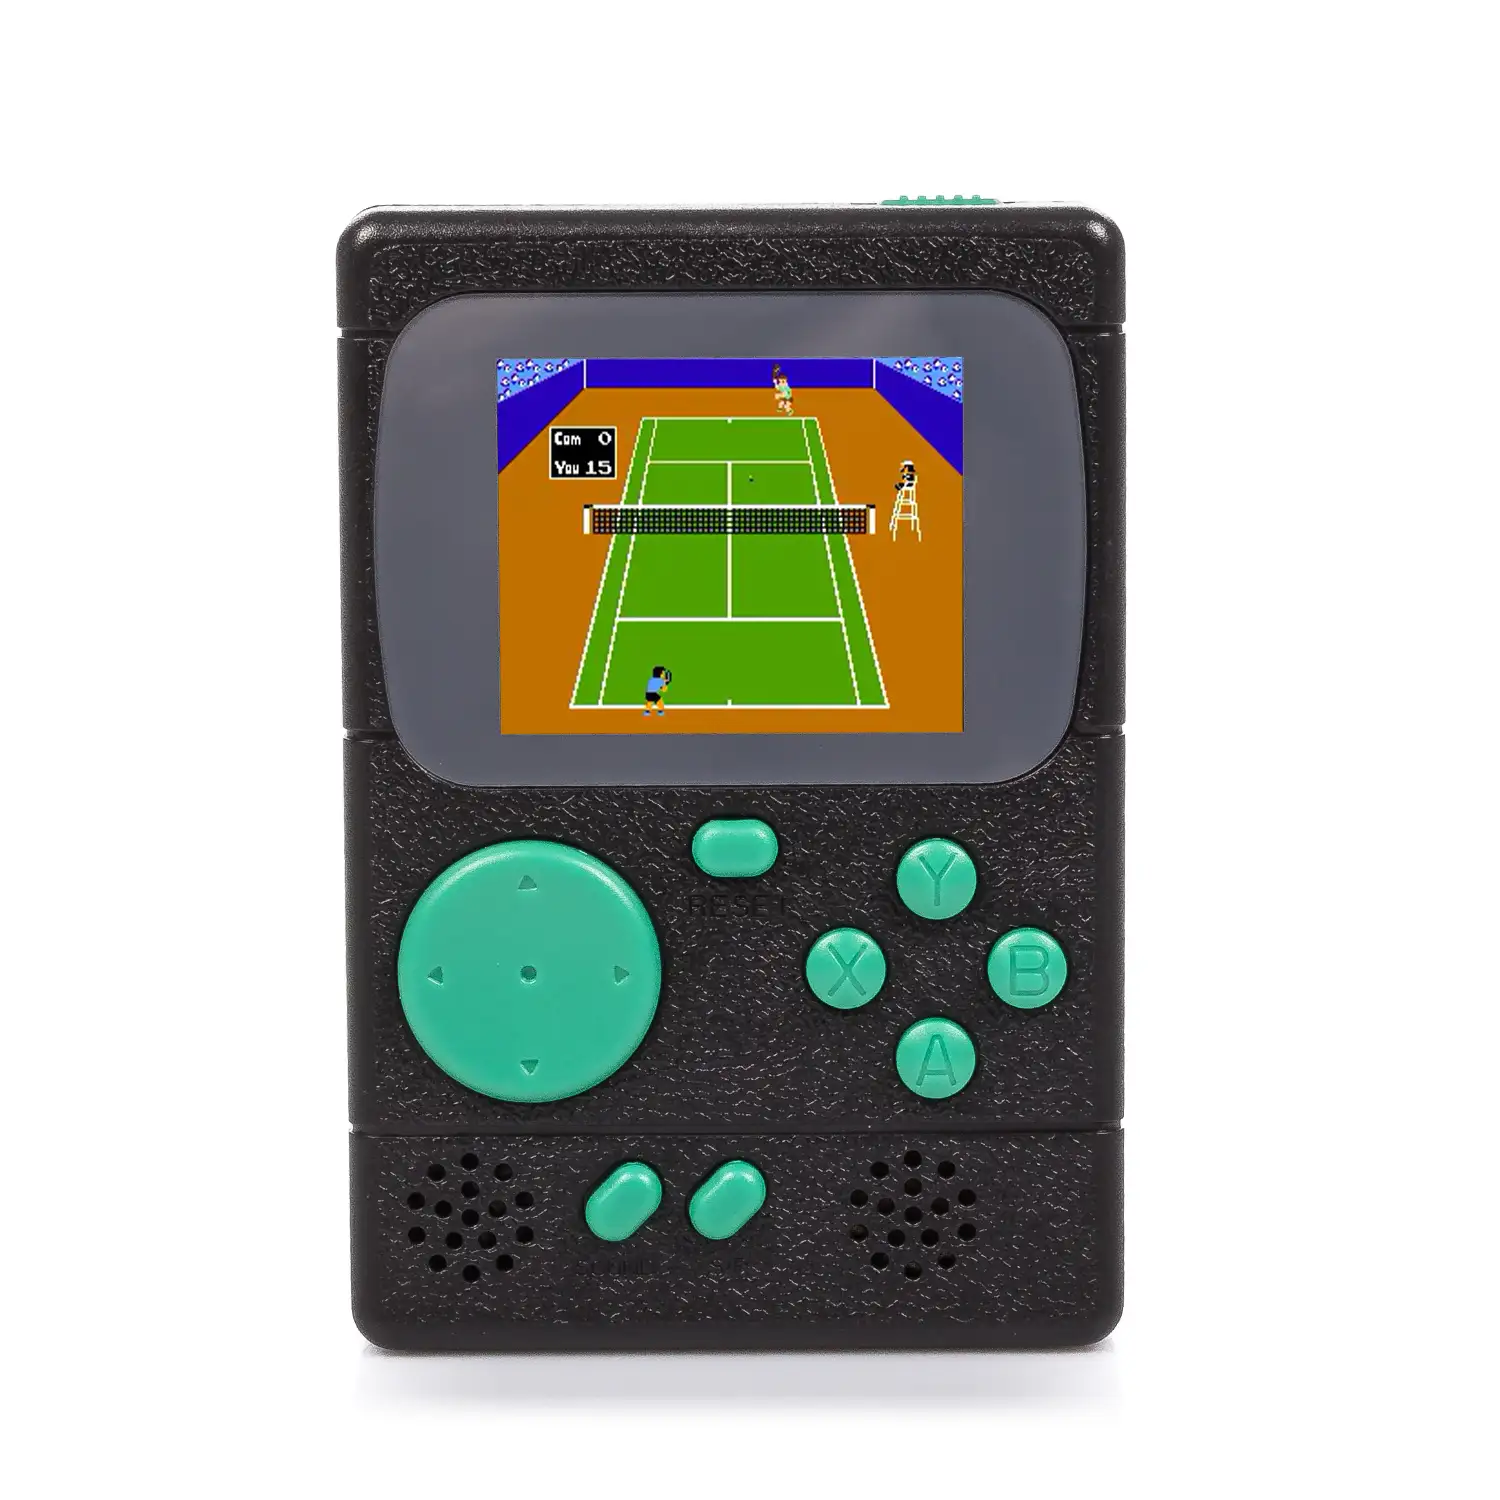 Mini consola portátil retro Pocket Player con 198 juegos de 8 bits, pantalla de 2 pulgadas.